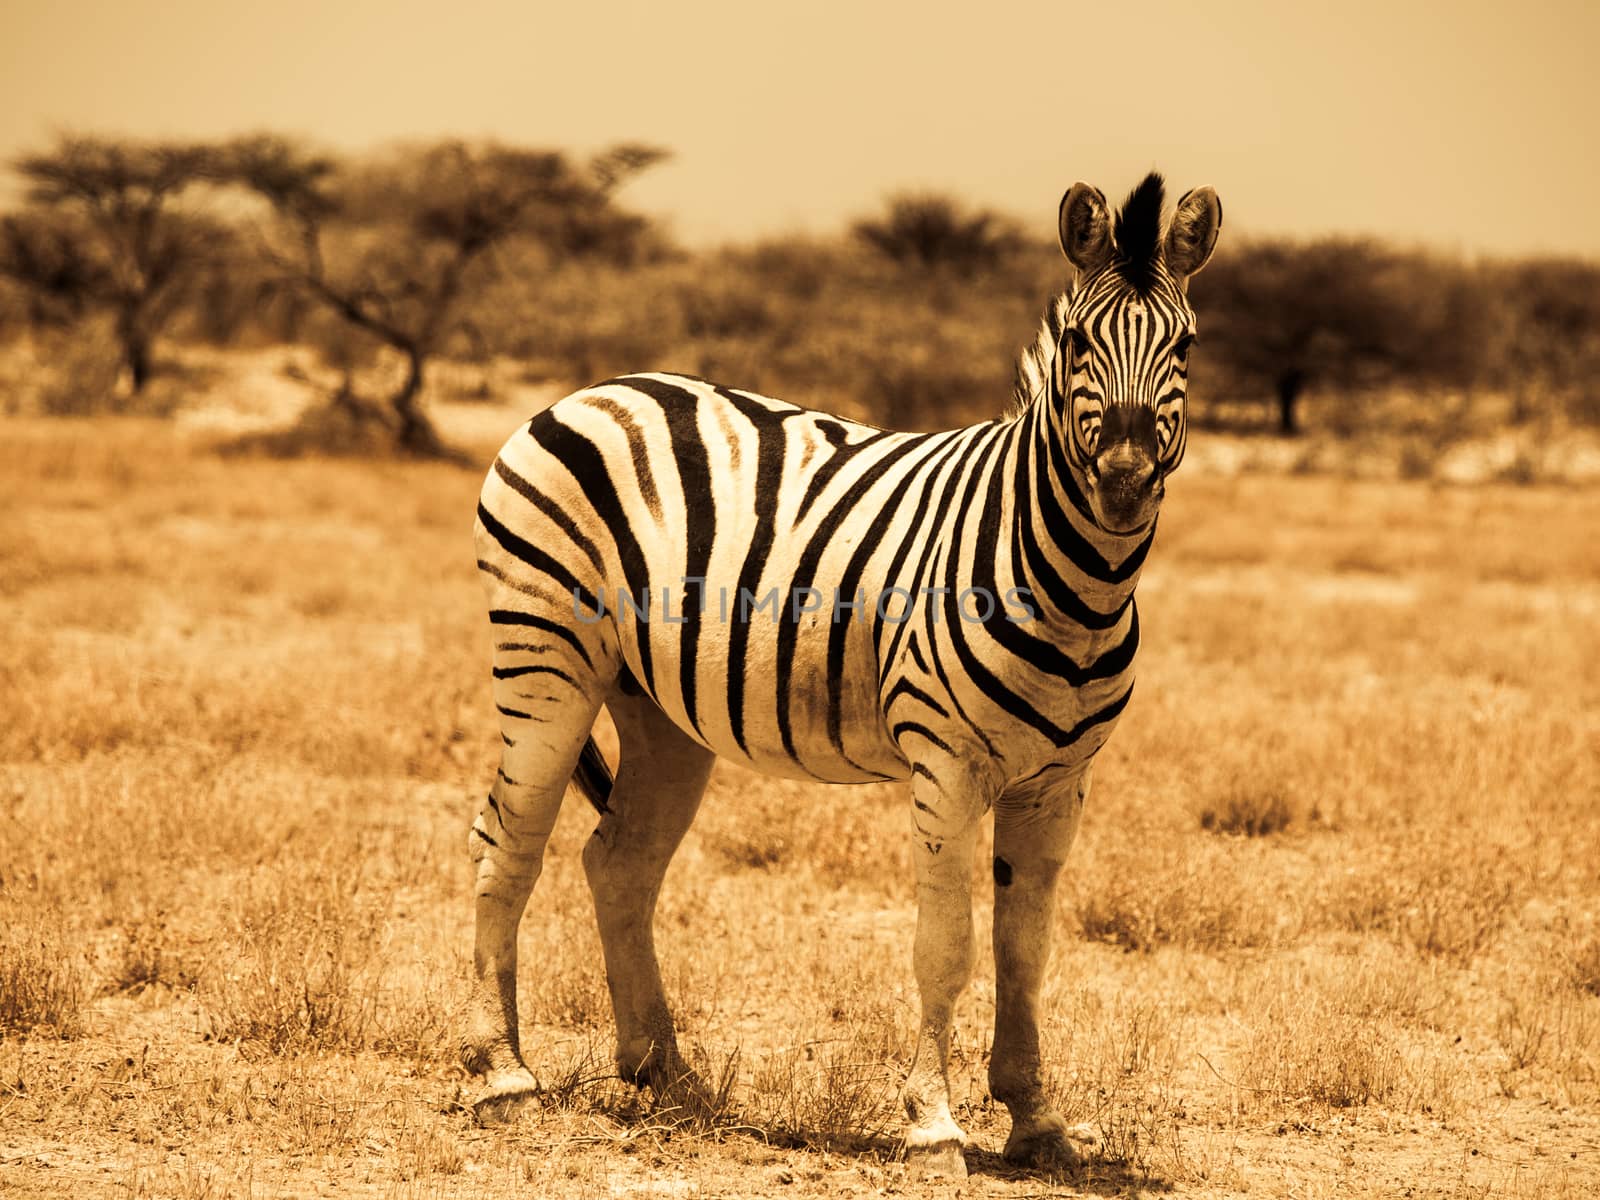 Beautiful zebra by pyty